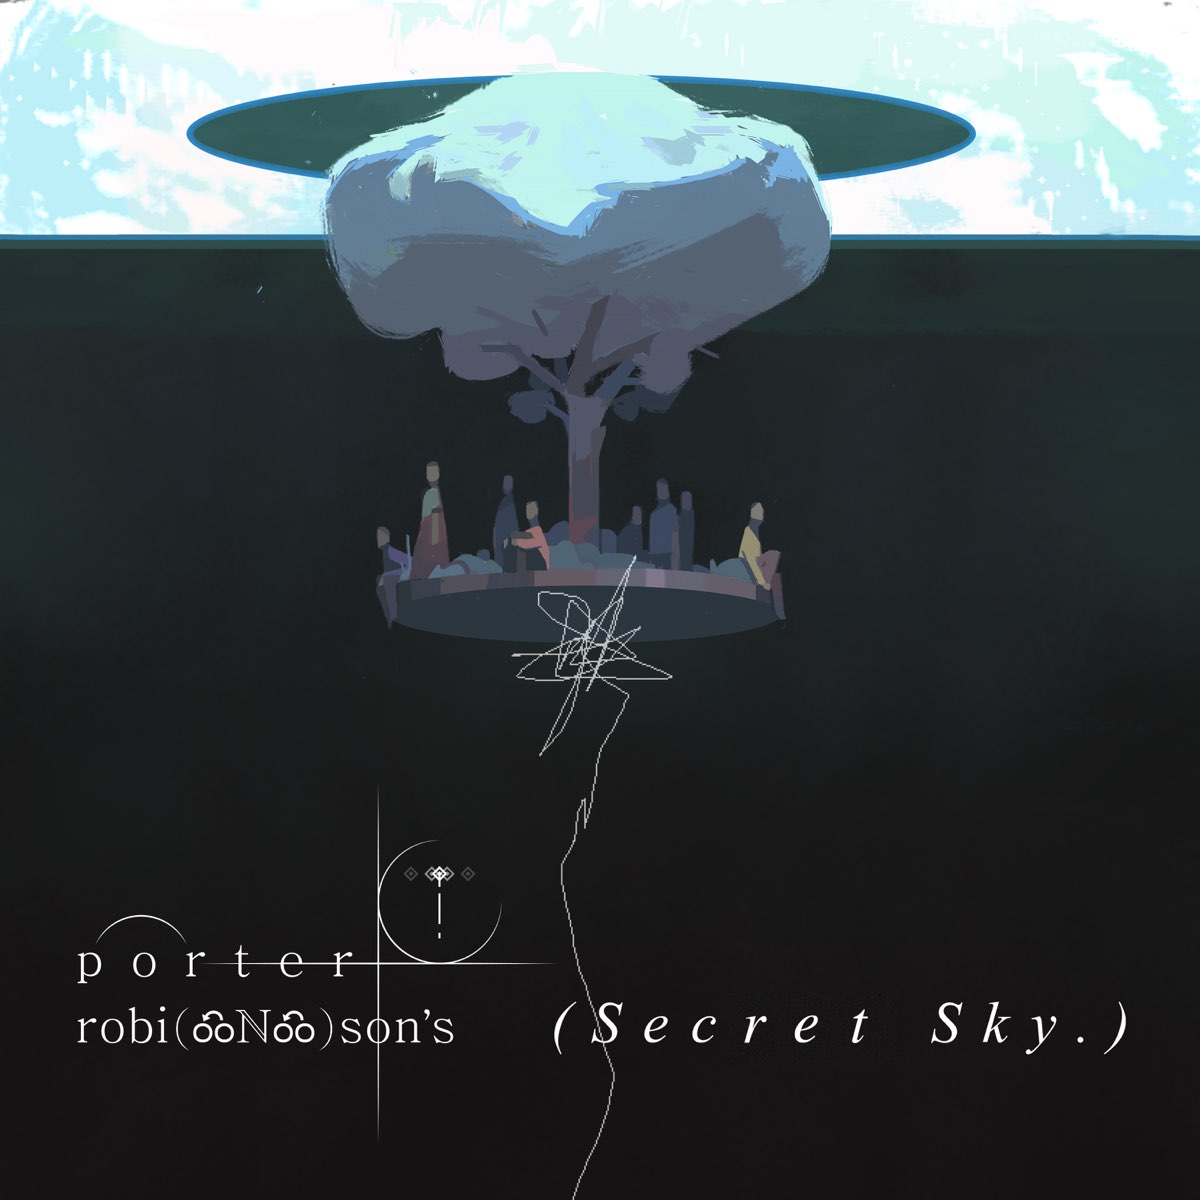 ‎Secret Sky 2020 (DJ Mix) by Porter Robinson on Apple Music